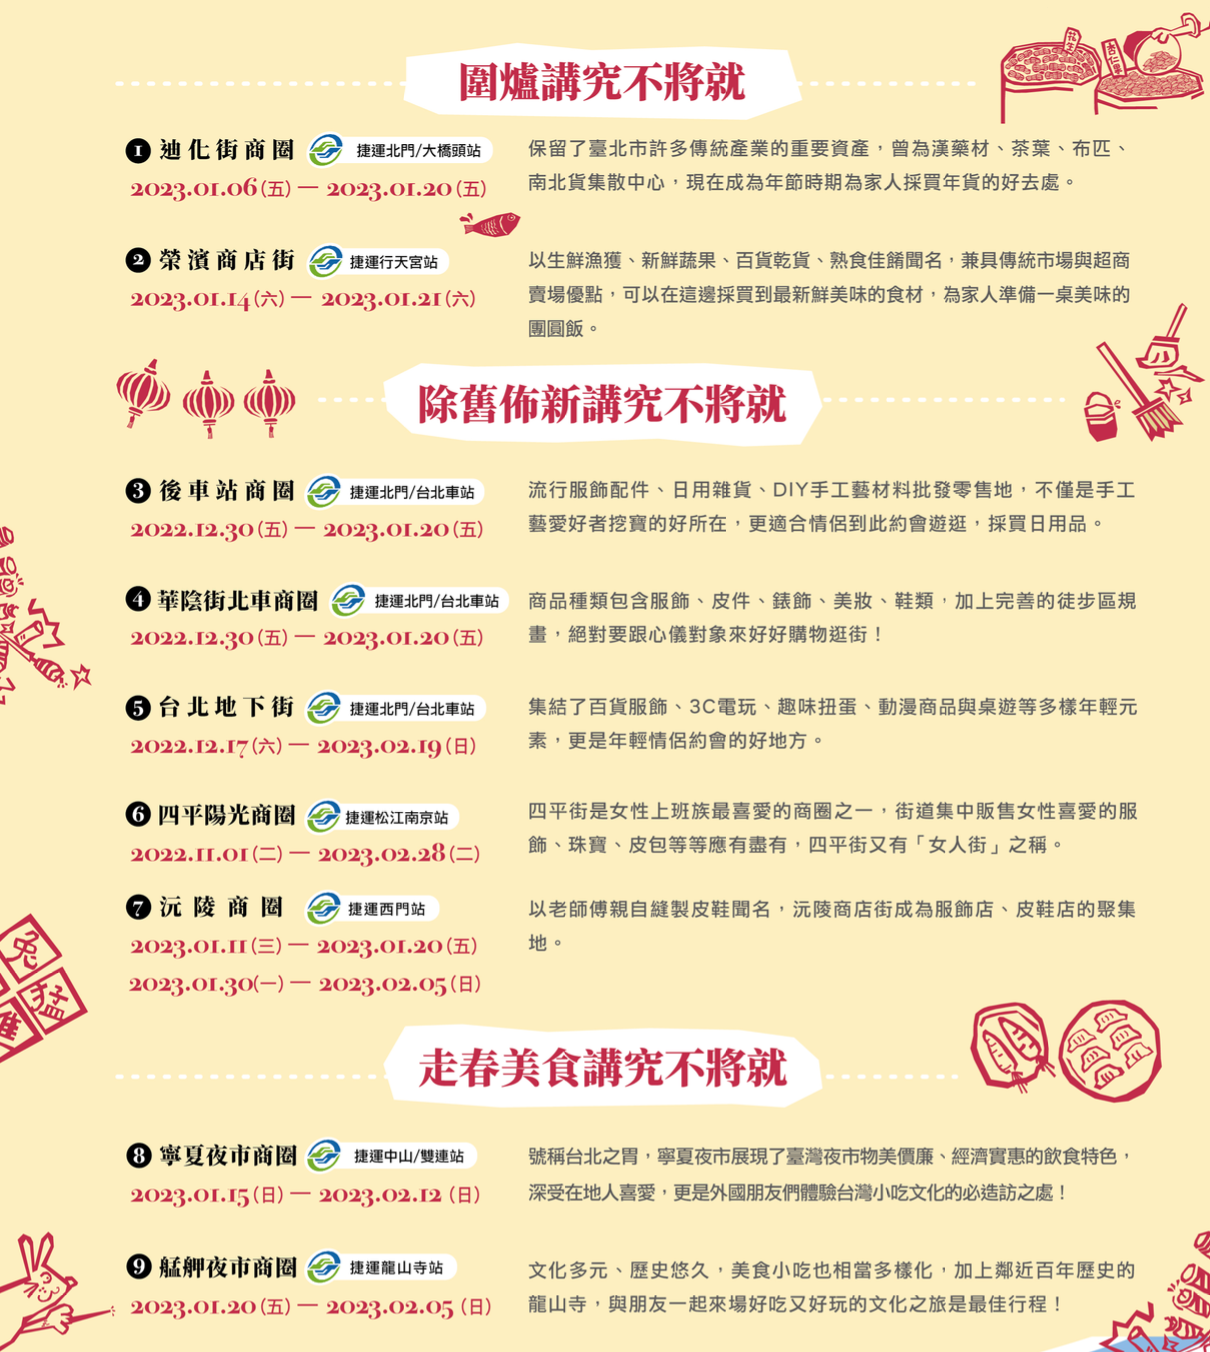 2023「台北年貨大街」商圈地圖一覽表